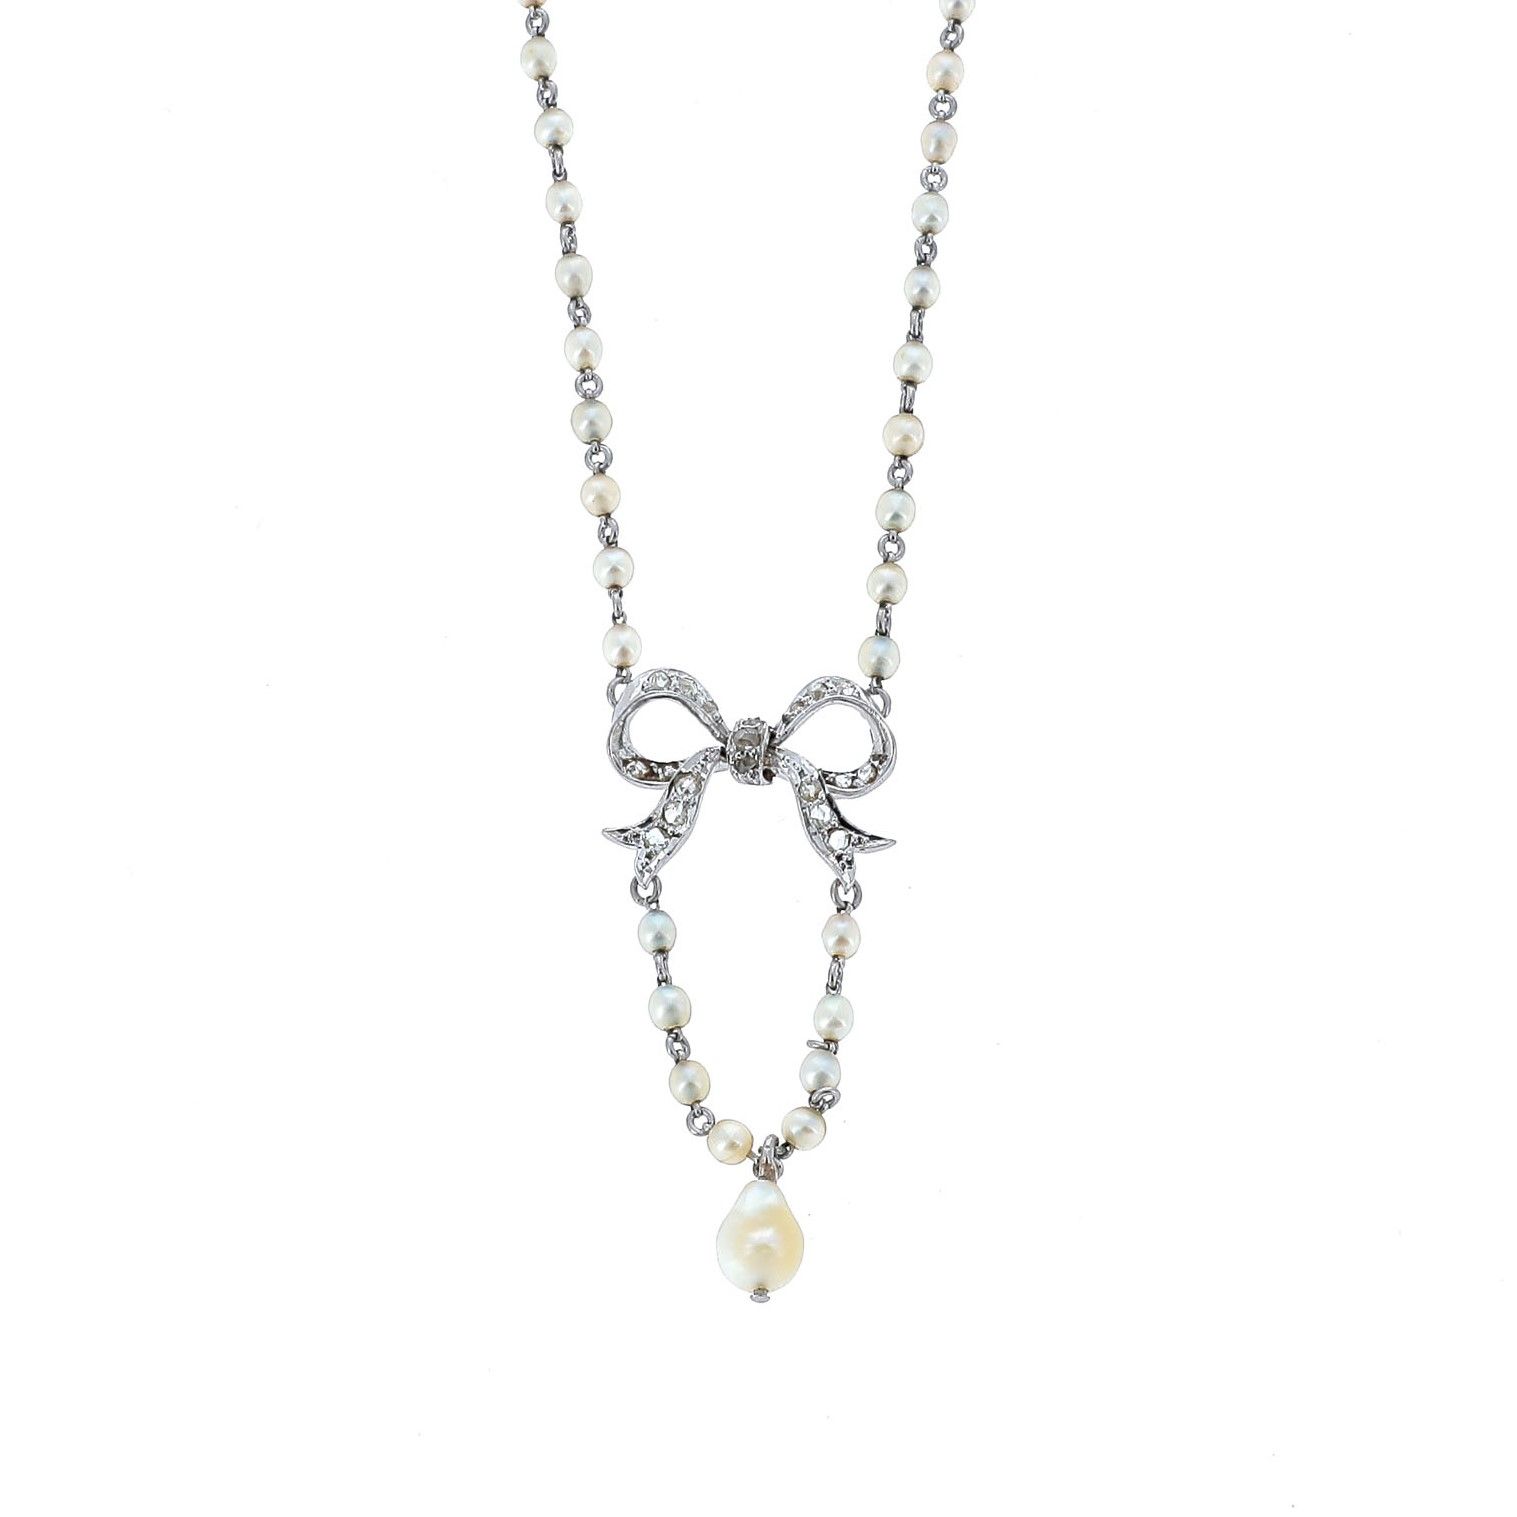 Null 亵服项链

白金链，用小颗珍珠点缀，用钻石结在领口处固定一颗水滴珍珠。 

19世纪晚期。

一条珍珠、钻石和18K金项链。19世纪末。



RC &hellip;